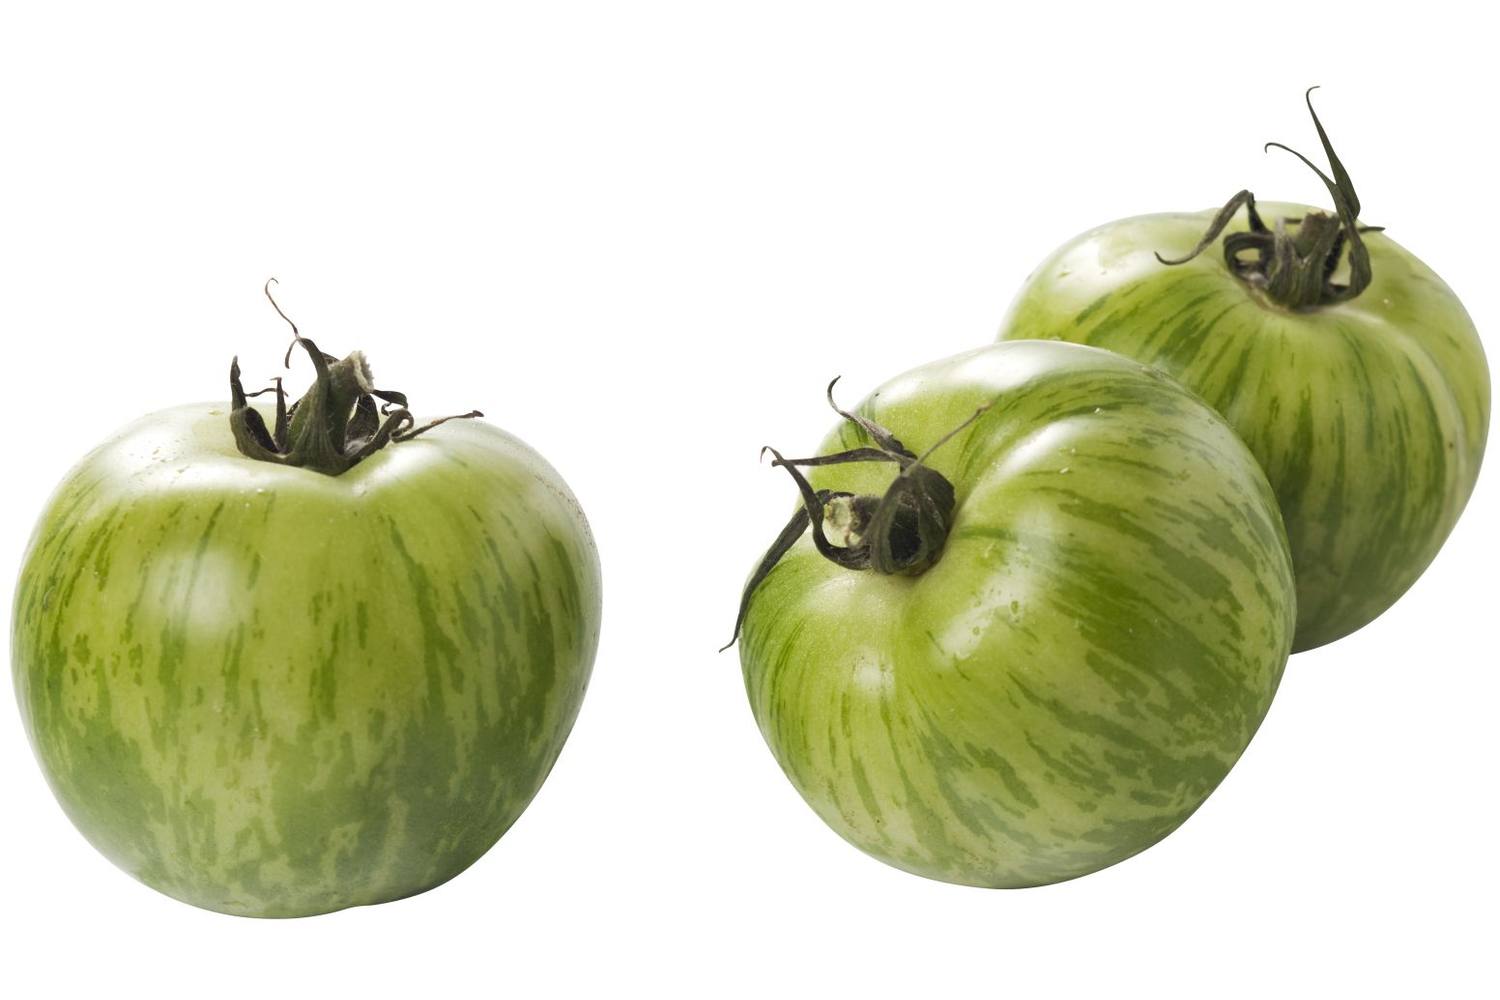 Tijger tomaten groen kist 3 kilogram 1